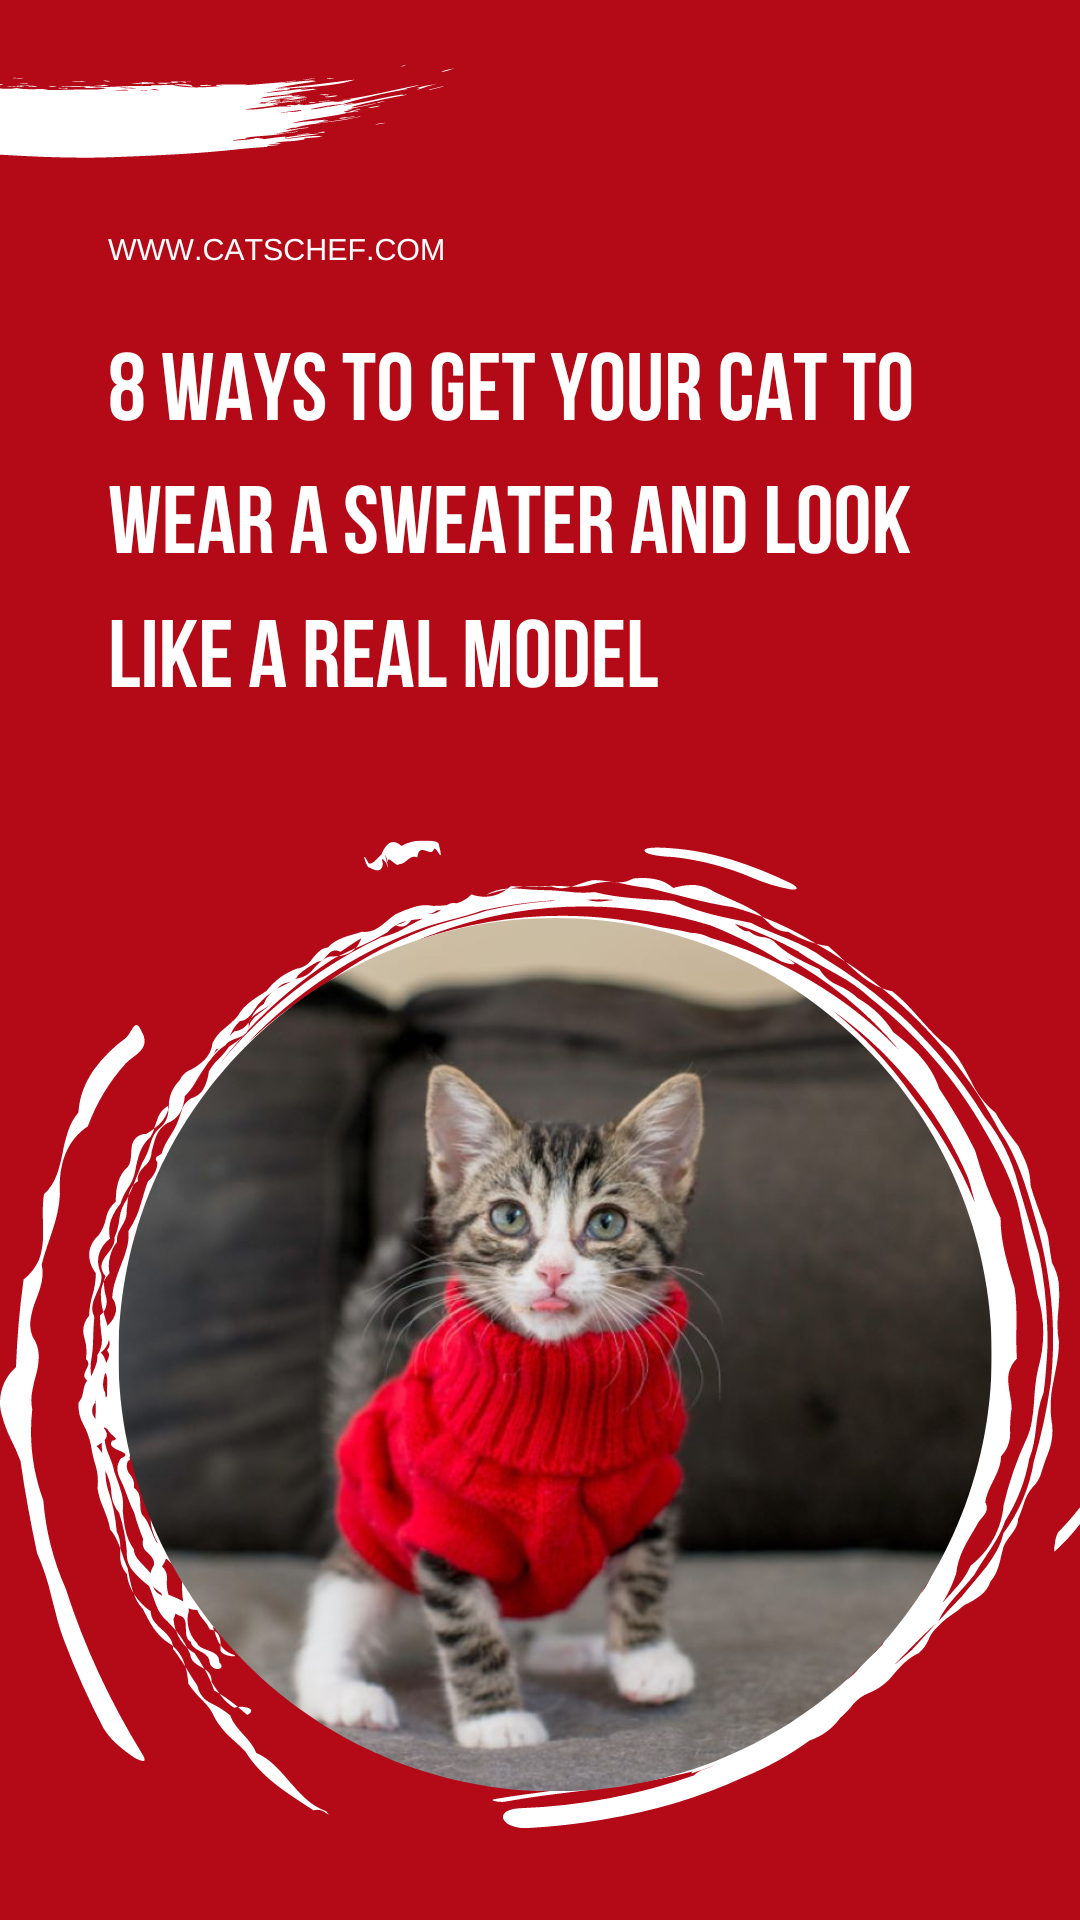 Kedinize Kazak Giydirip Gerçek Bir Model Gibi Görünmesini Sağlamanın 8 Yolu